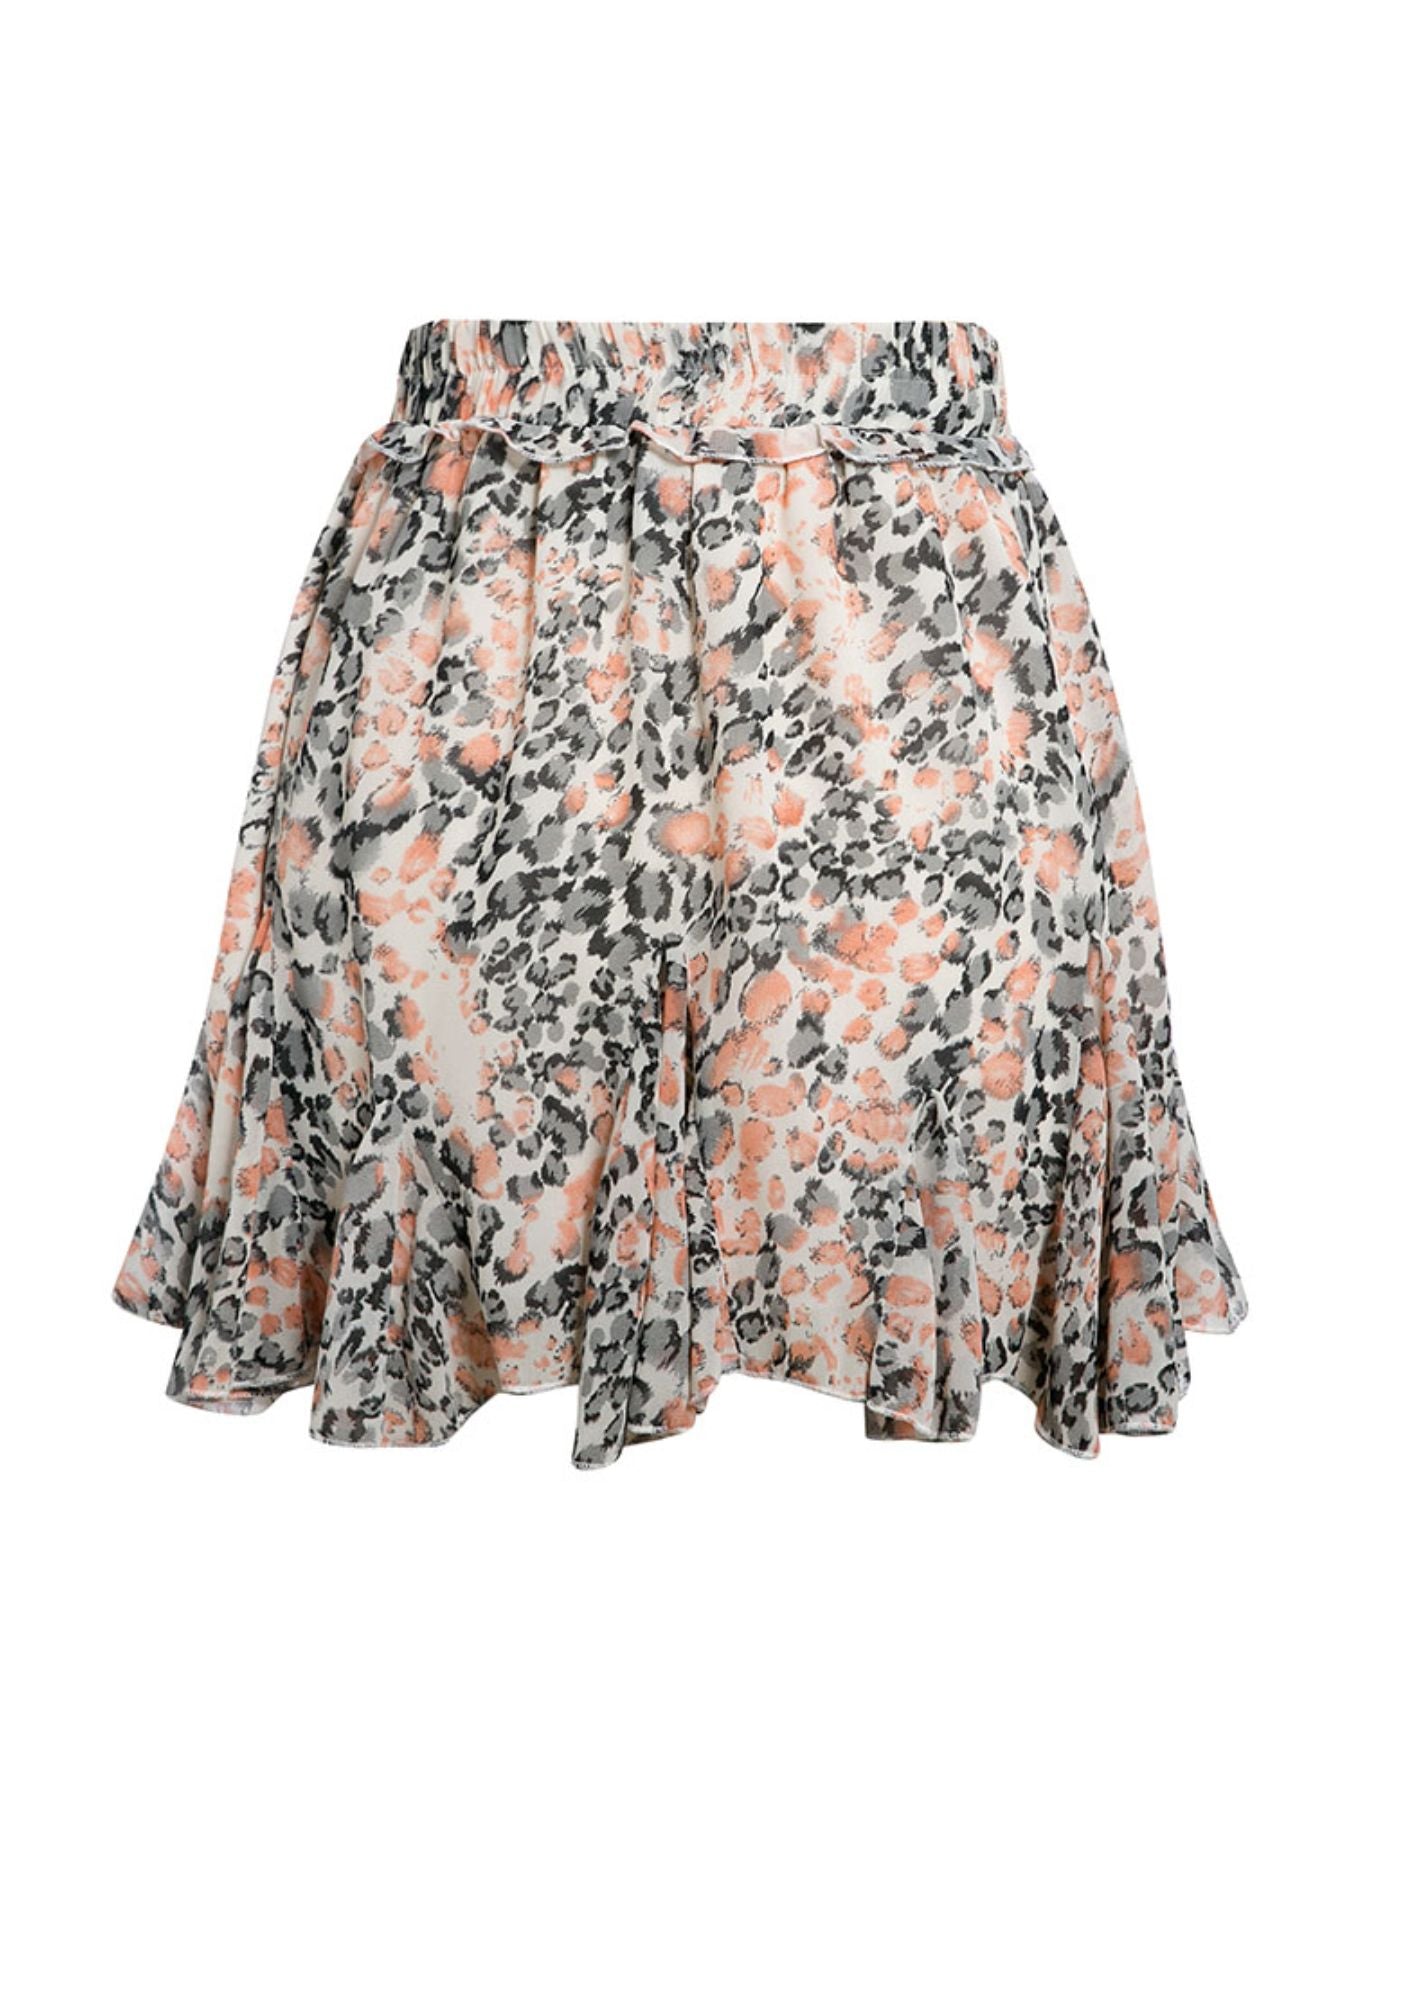 Leopard Ruffled Versatile Short Skirt